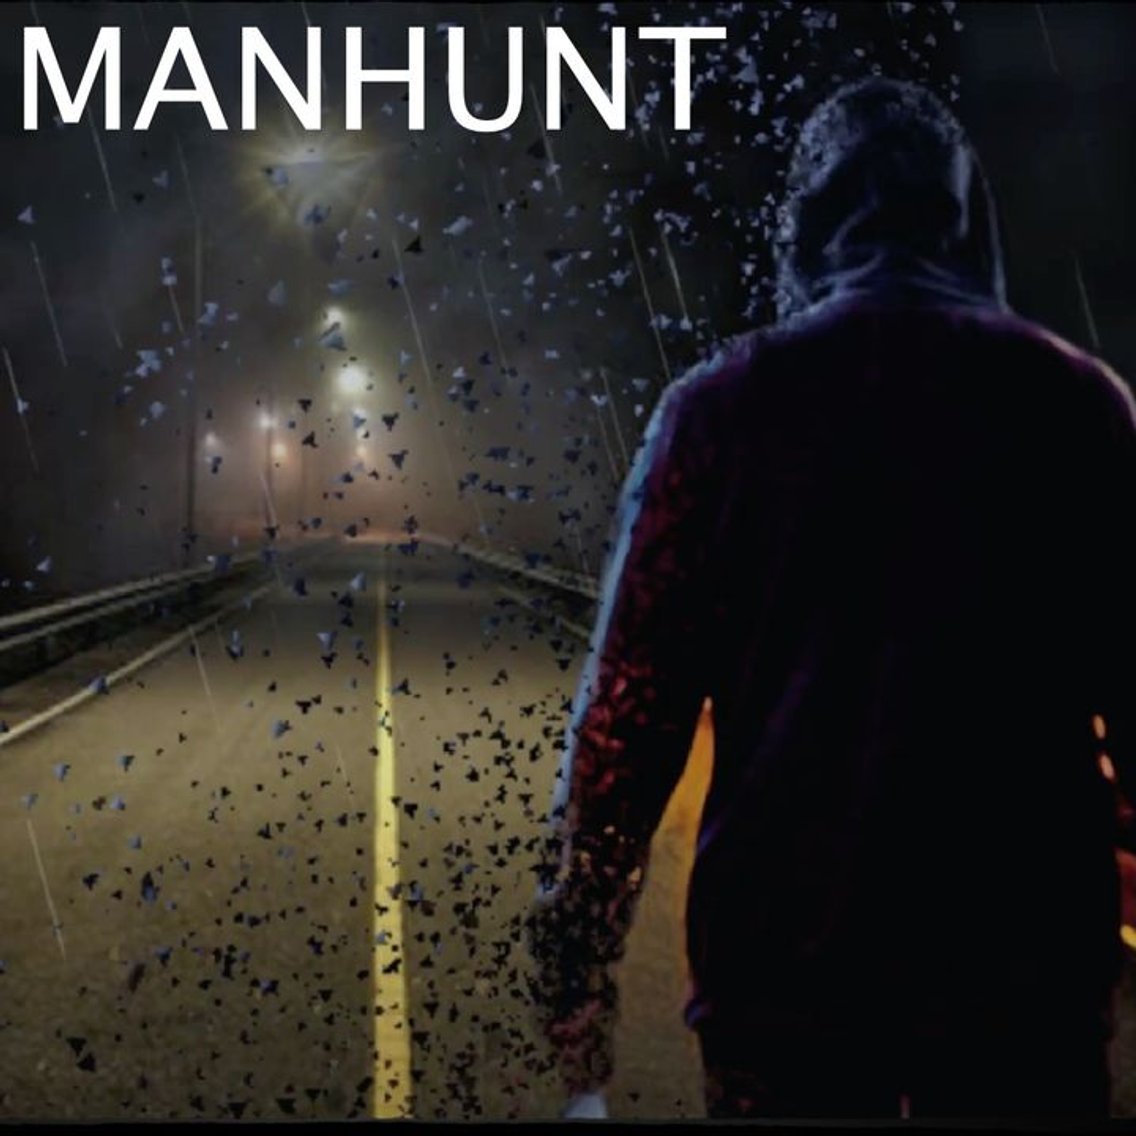 Manhunt - Cover Image